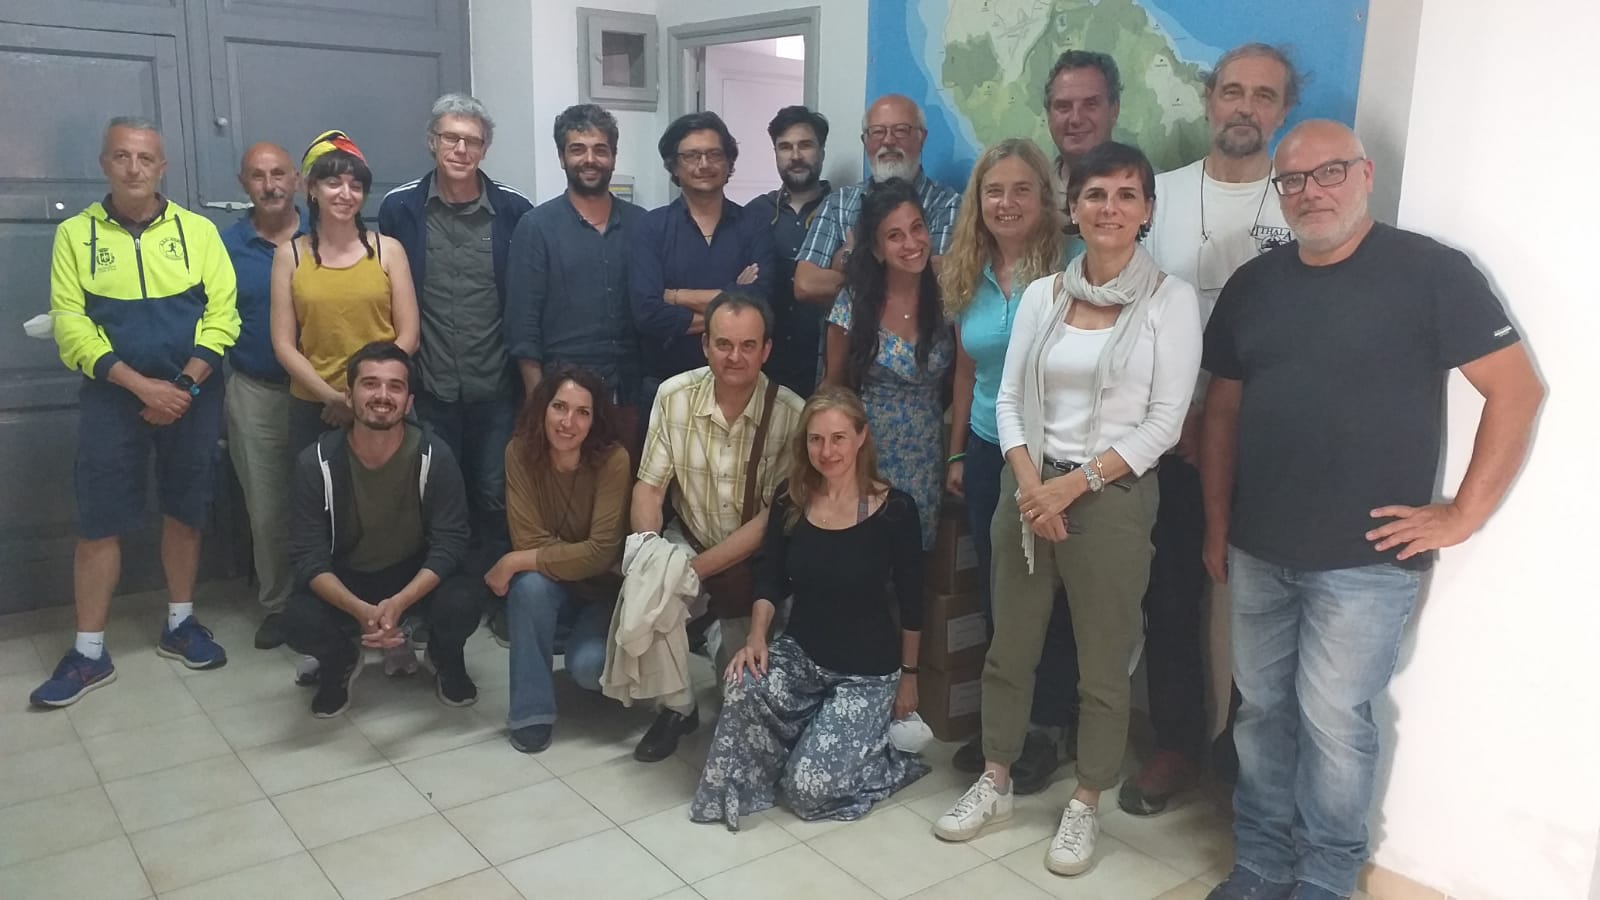 Biodiversità Bagno dell’Acqua: a Pantelleria l’equipe multidisciplinare di ricercatori coordinata dal professor Chiocci